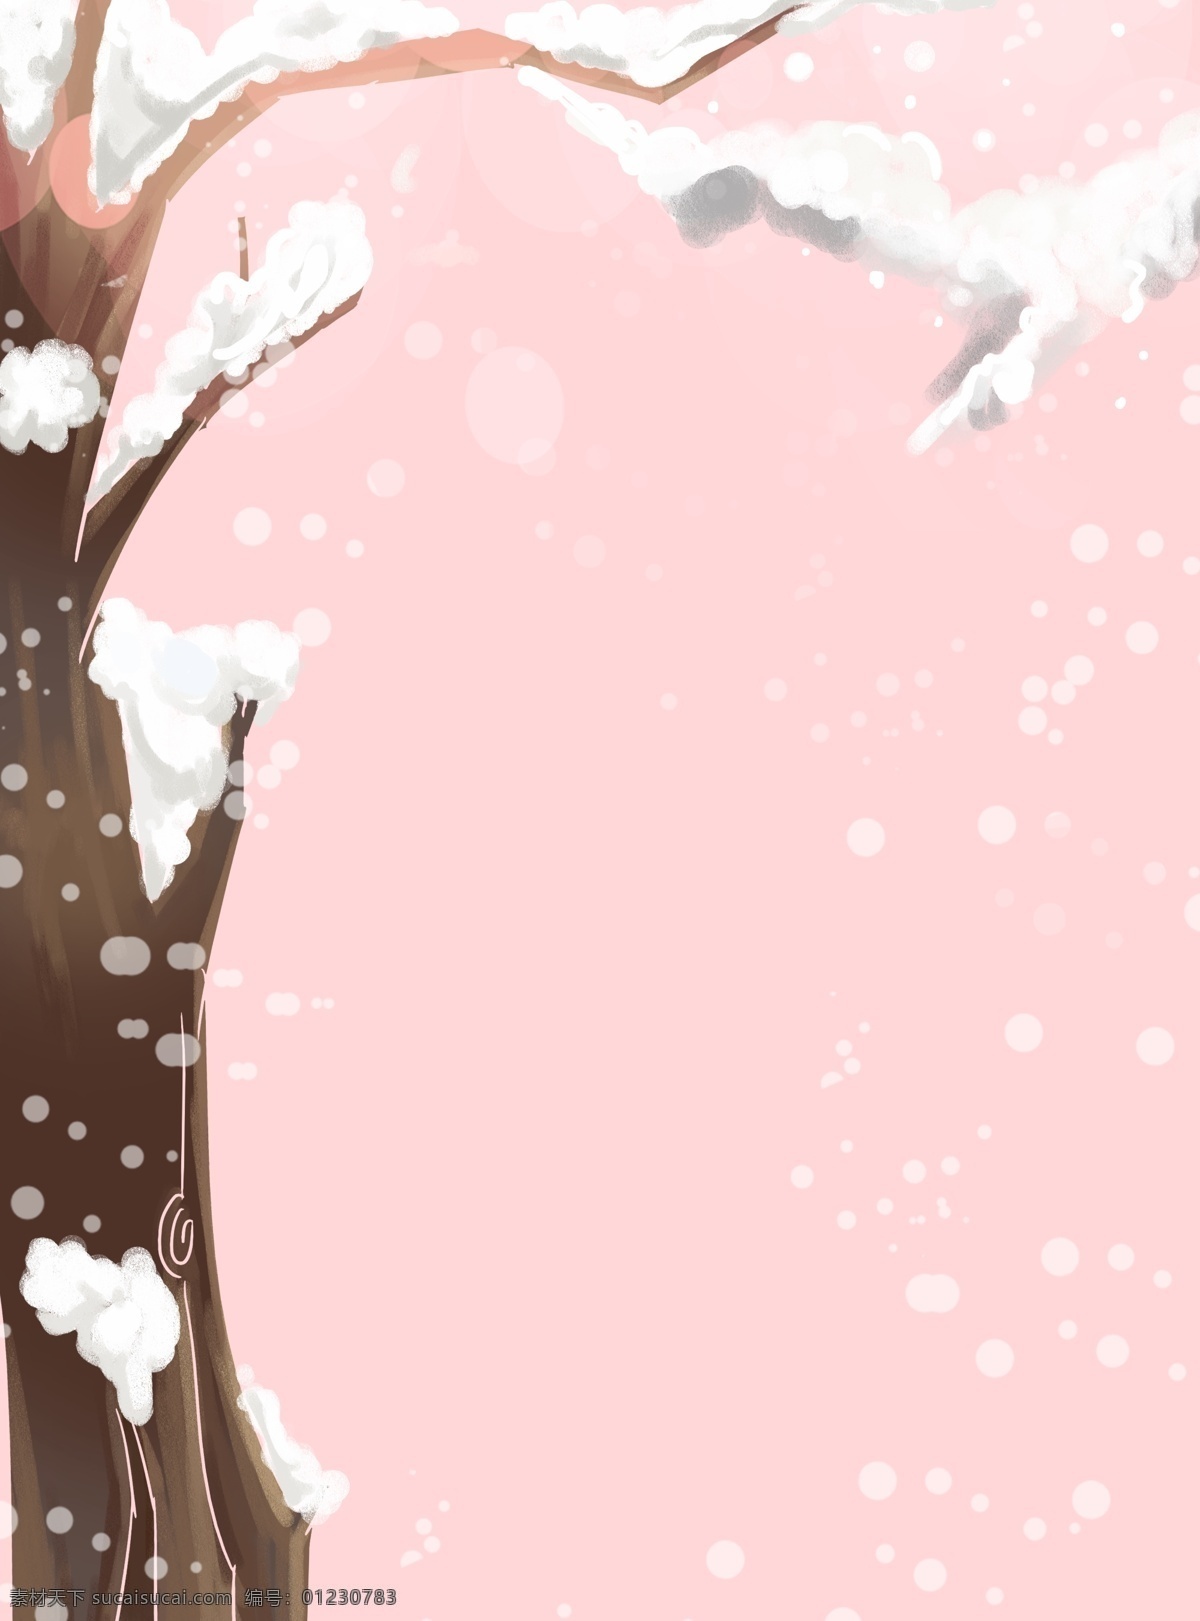 可爱 粉色 清新 树木 雪景 背景 雪地背景 手绘背景 下雪天背景 树林背景 可爱背景 粉色背景 通用背景